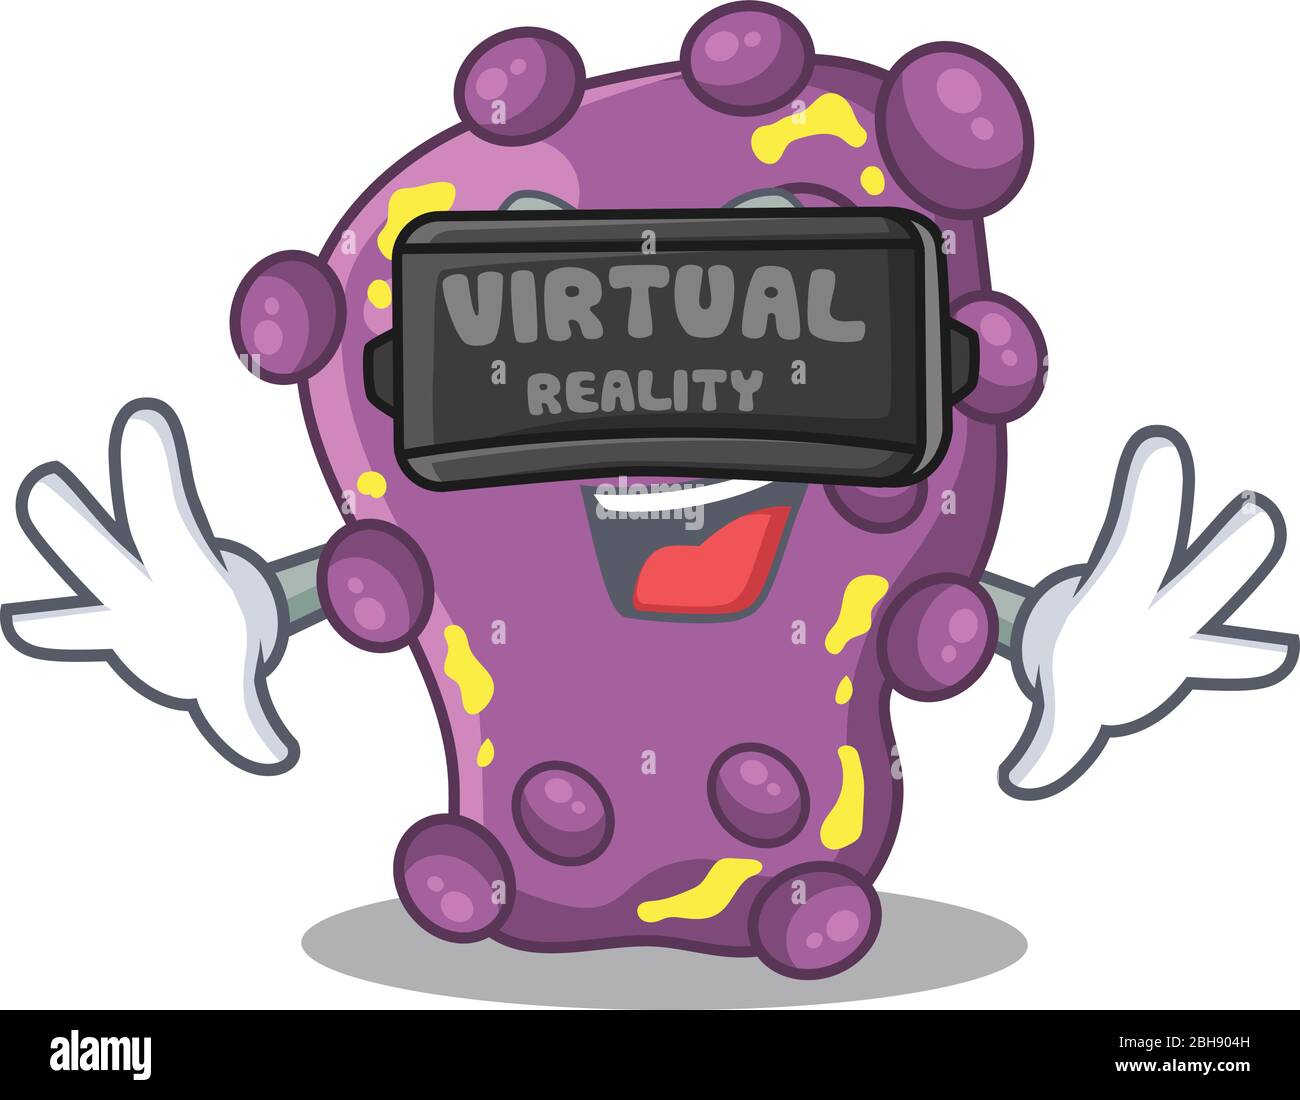 Stile di shigella con design a fumetti e moderno visore per realtà virtuale Illustrazione Vettoriale